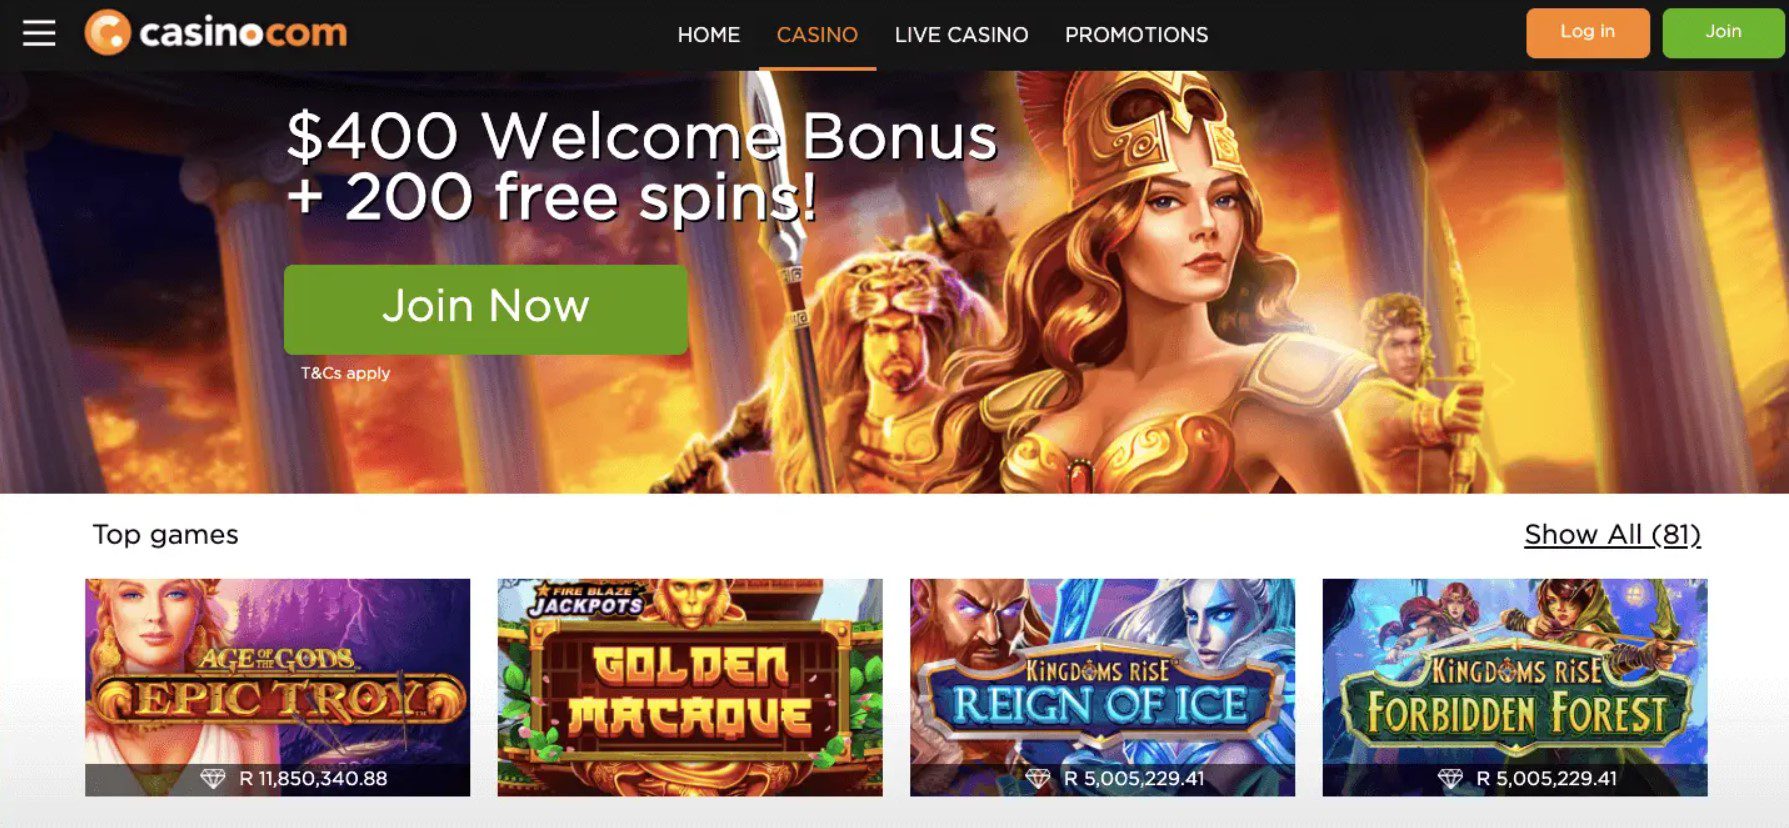 casino.com-homepage